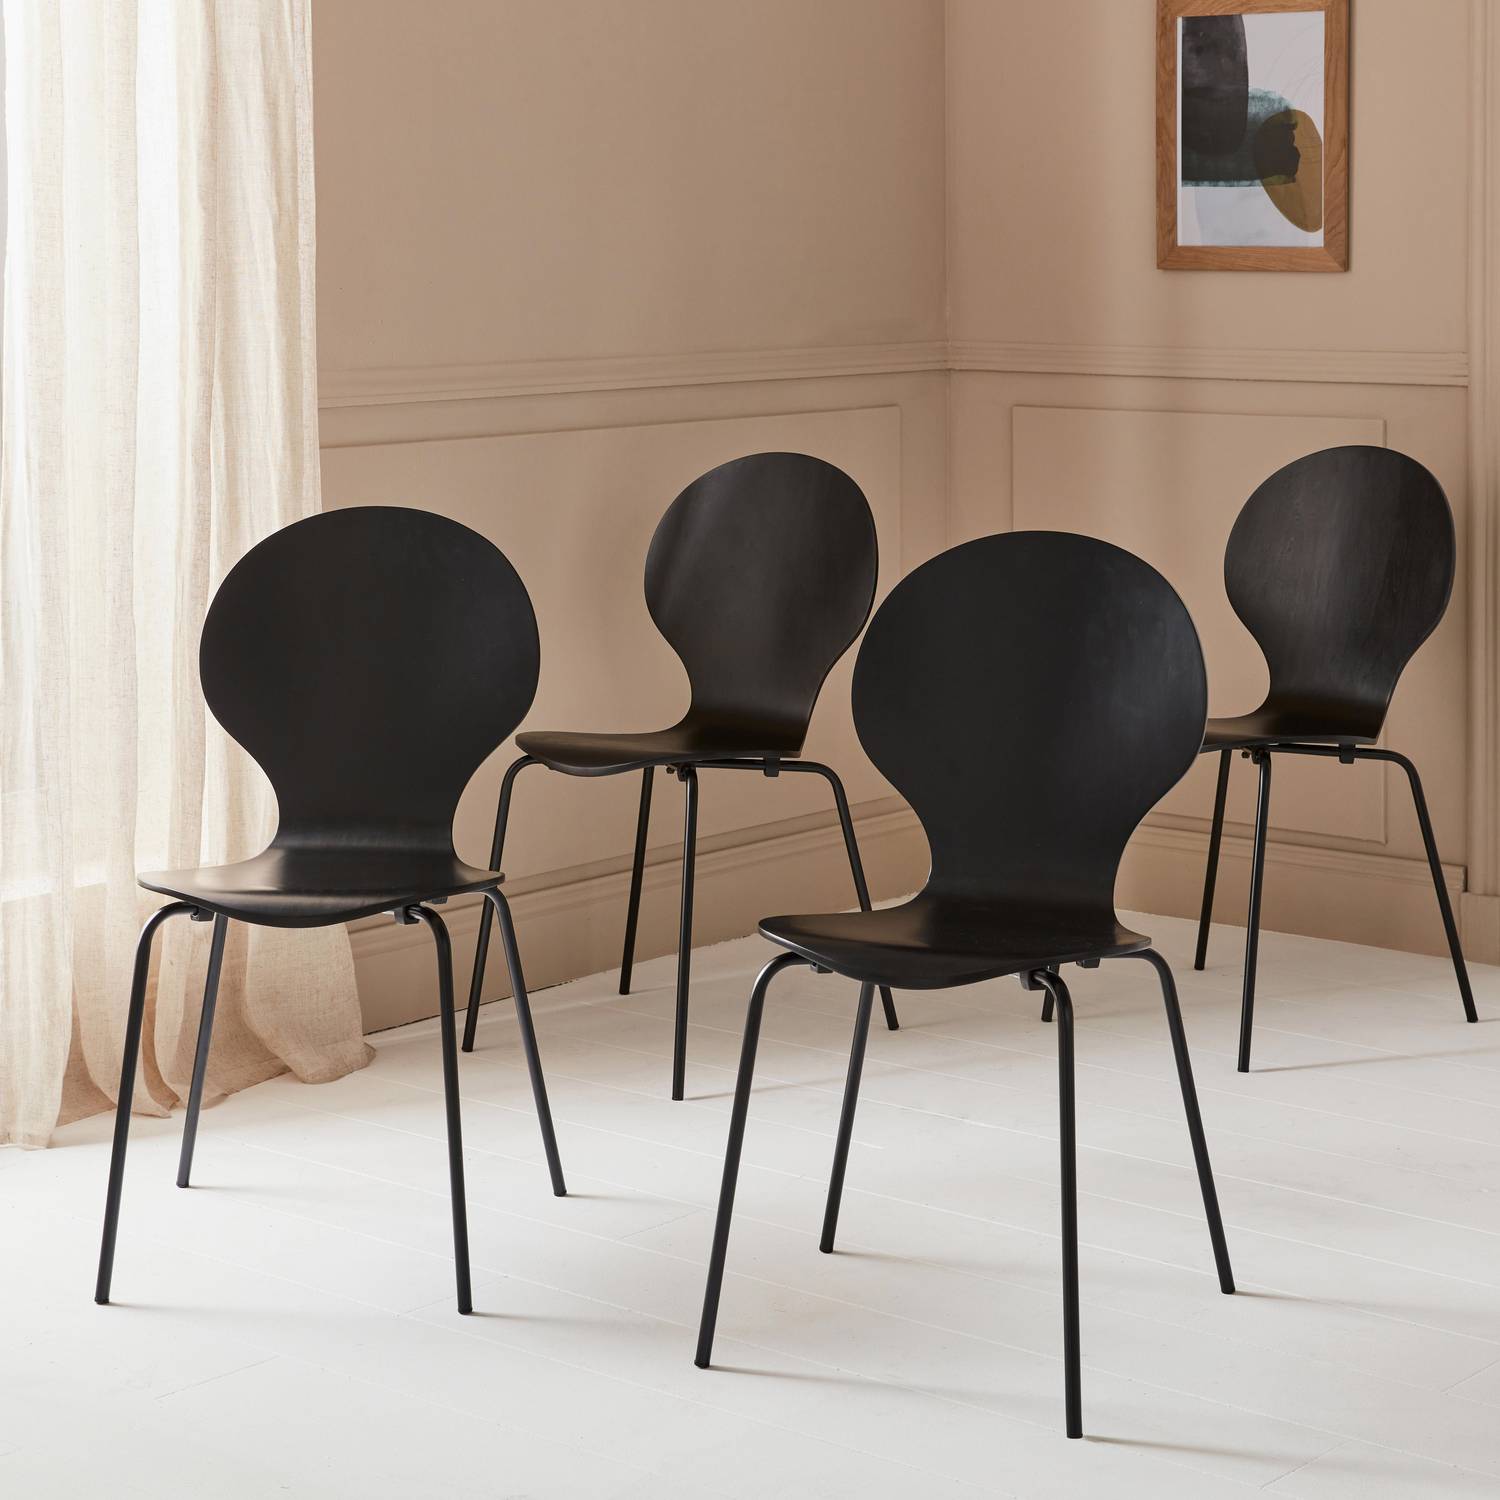 Set di 4 sedie nere retro impilabili, legno di hevea e compensato, gambe in acciaio, Naomi, L 43 x P 48 x H 87cm Photo2